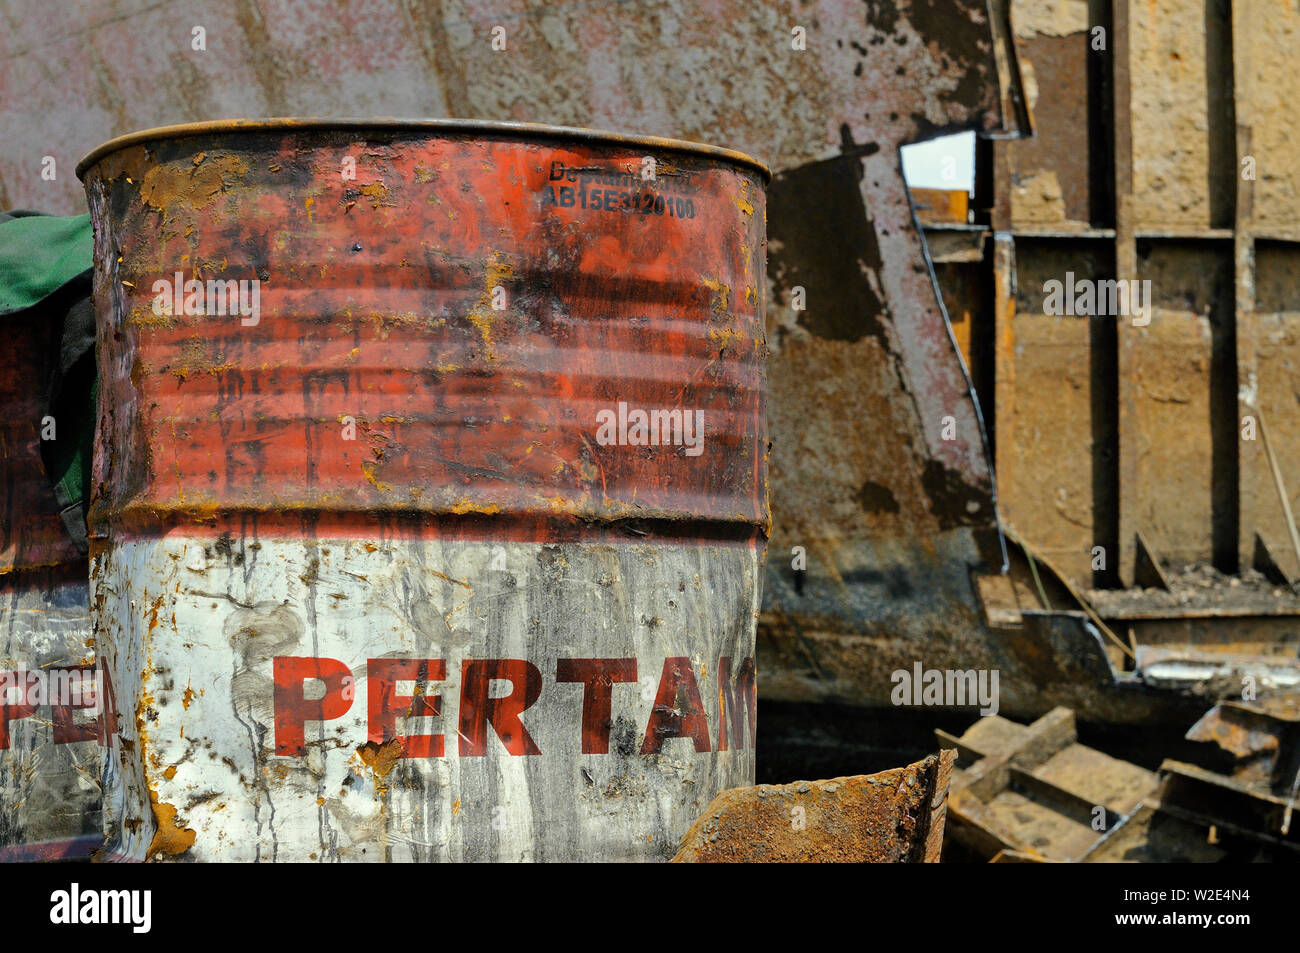 madura island, jawa timur / indonesia - may 10, 2010: an old weathered pertamina oild drum at a ship scrapping yard at the madury southern coast Stock Photo